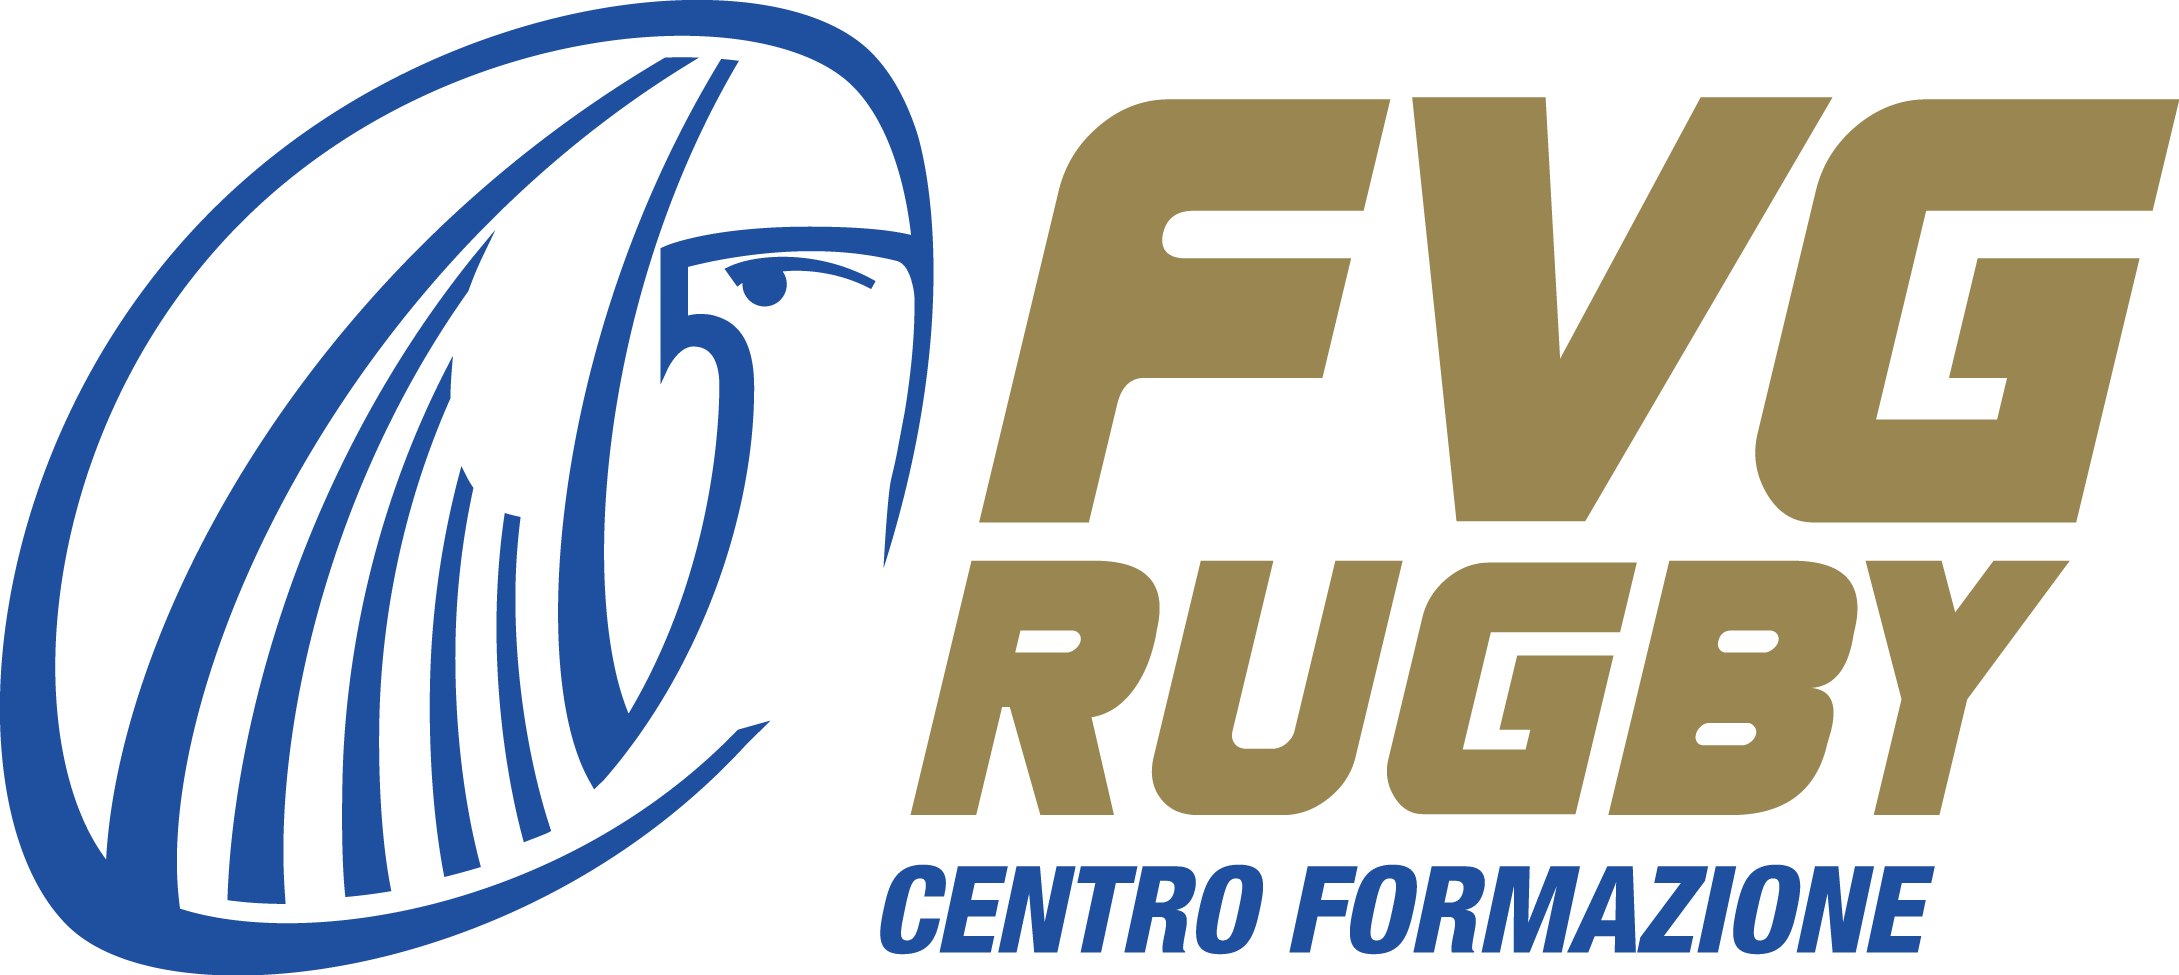 FVG RUGBY centro formazione logo